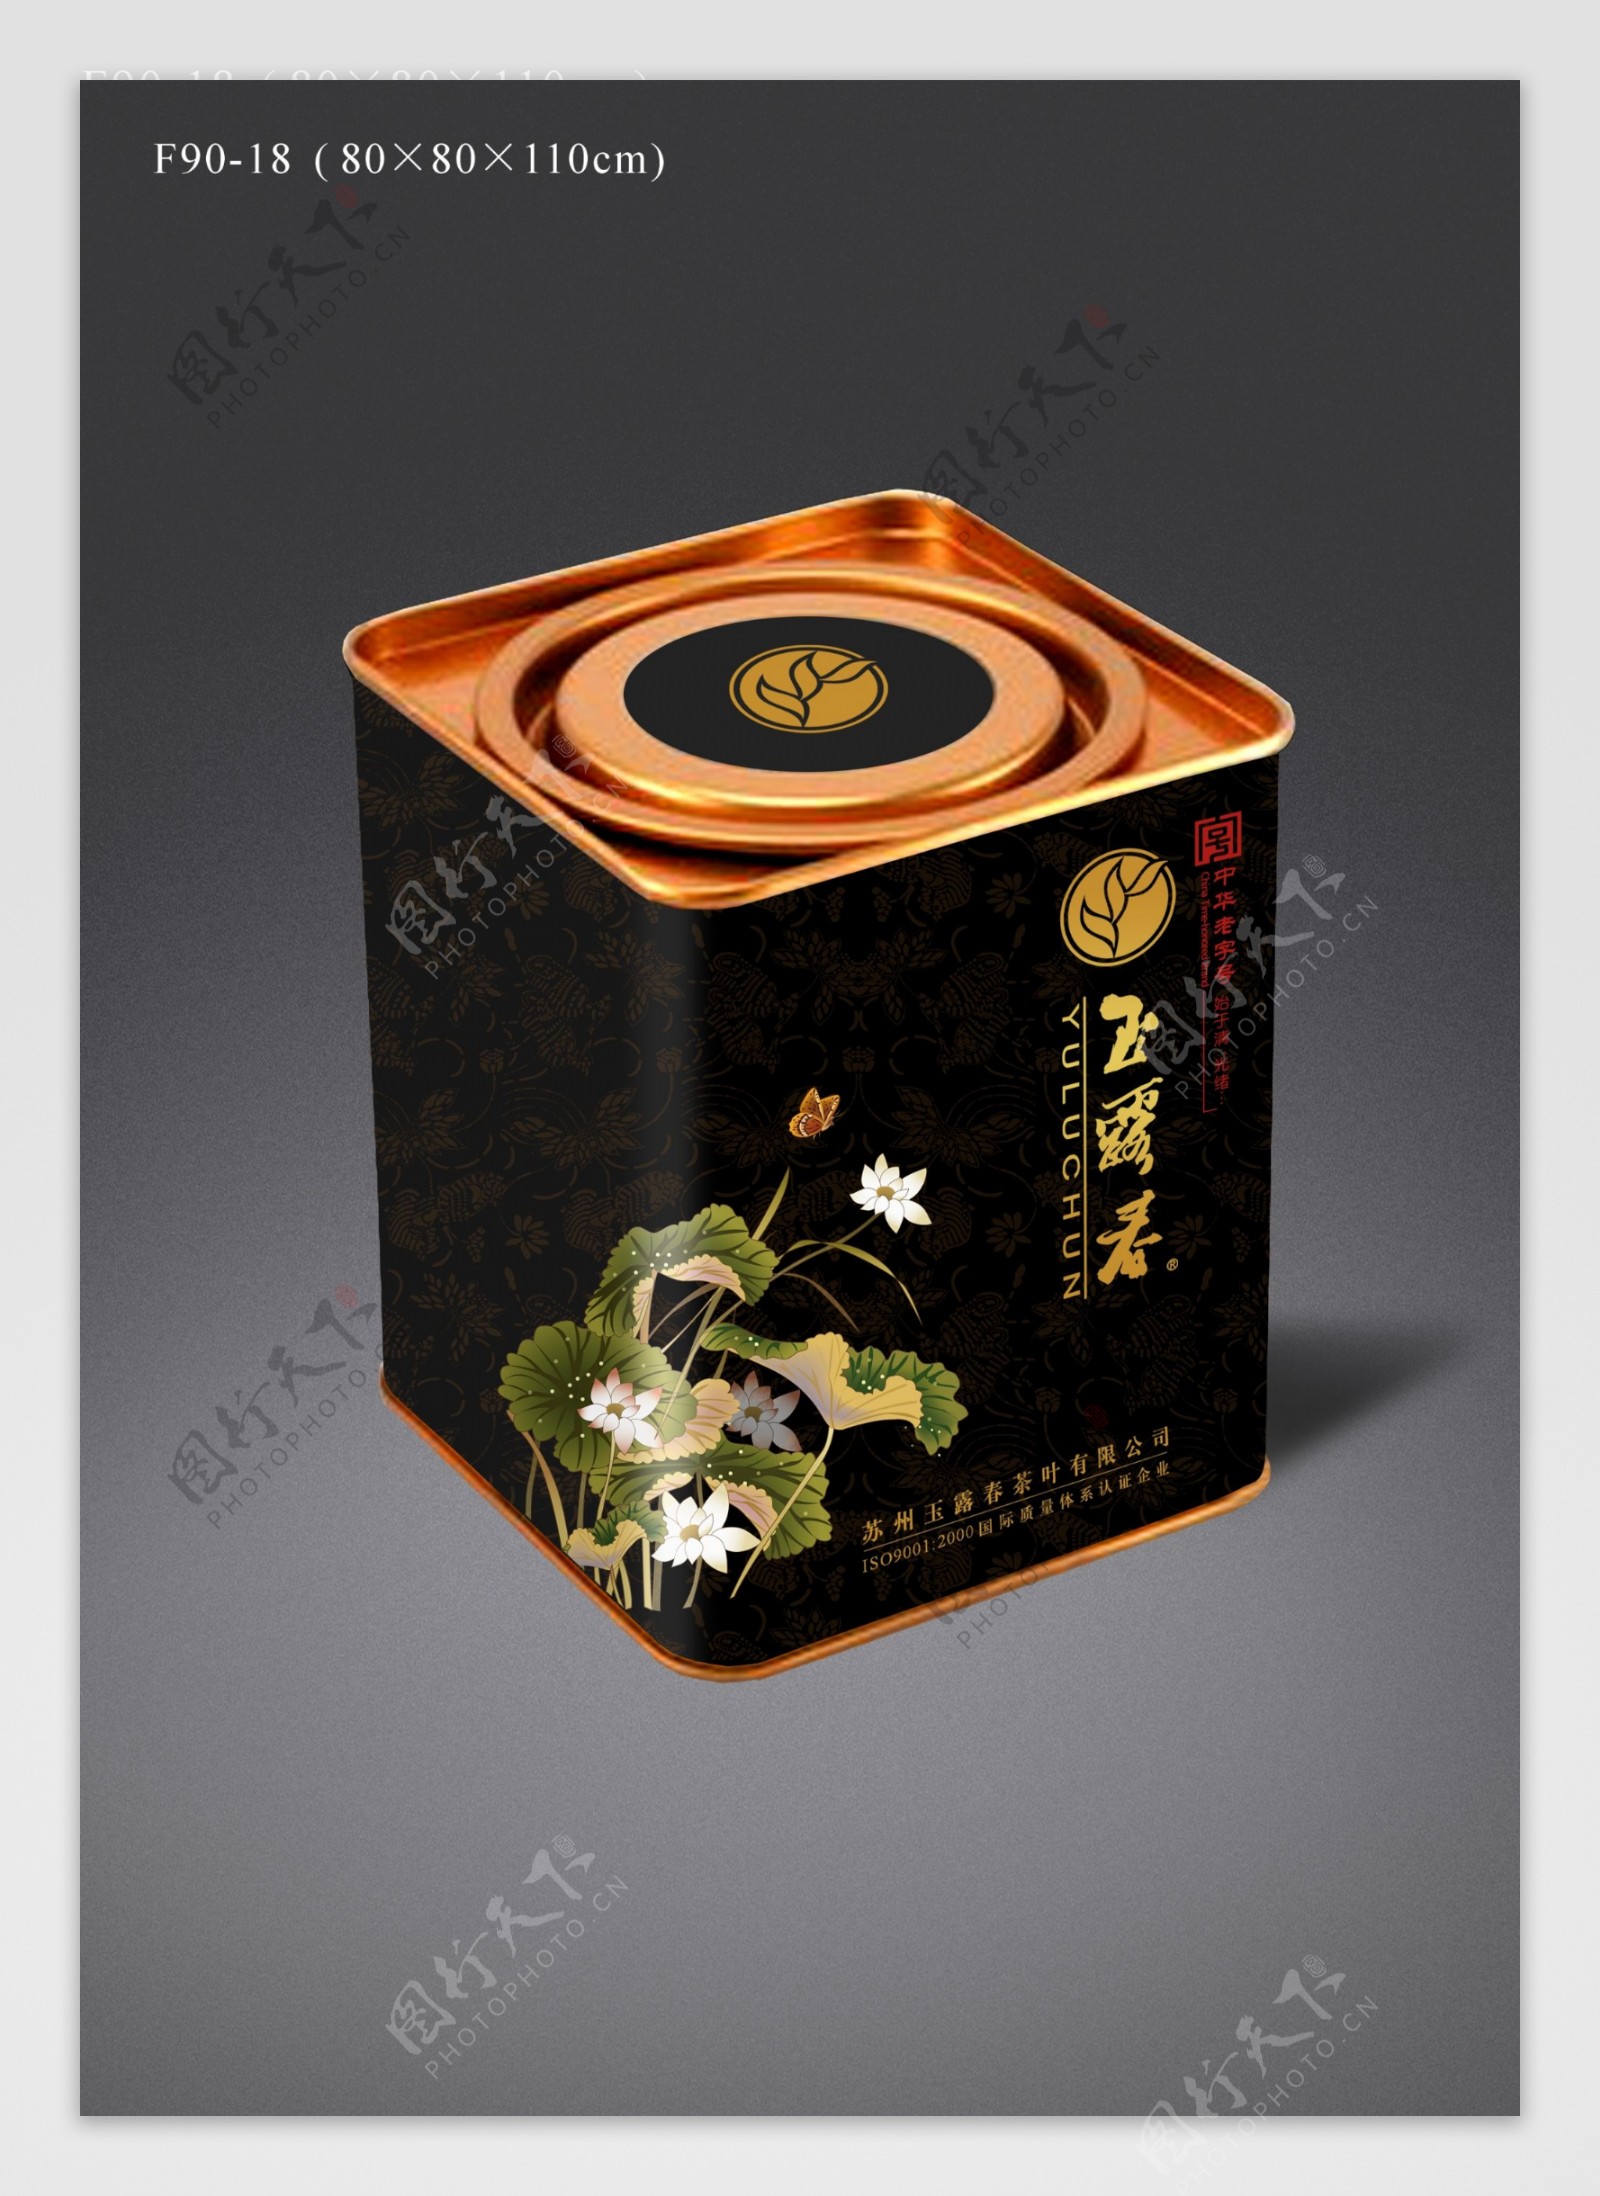 精美茶叶铁罐包装设计效果图图片